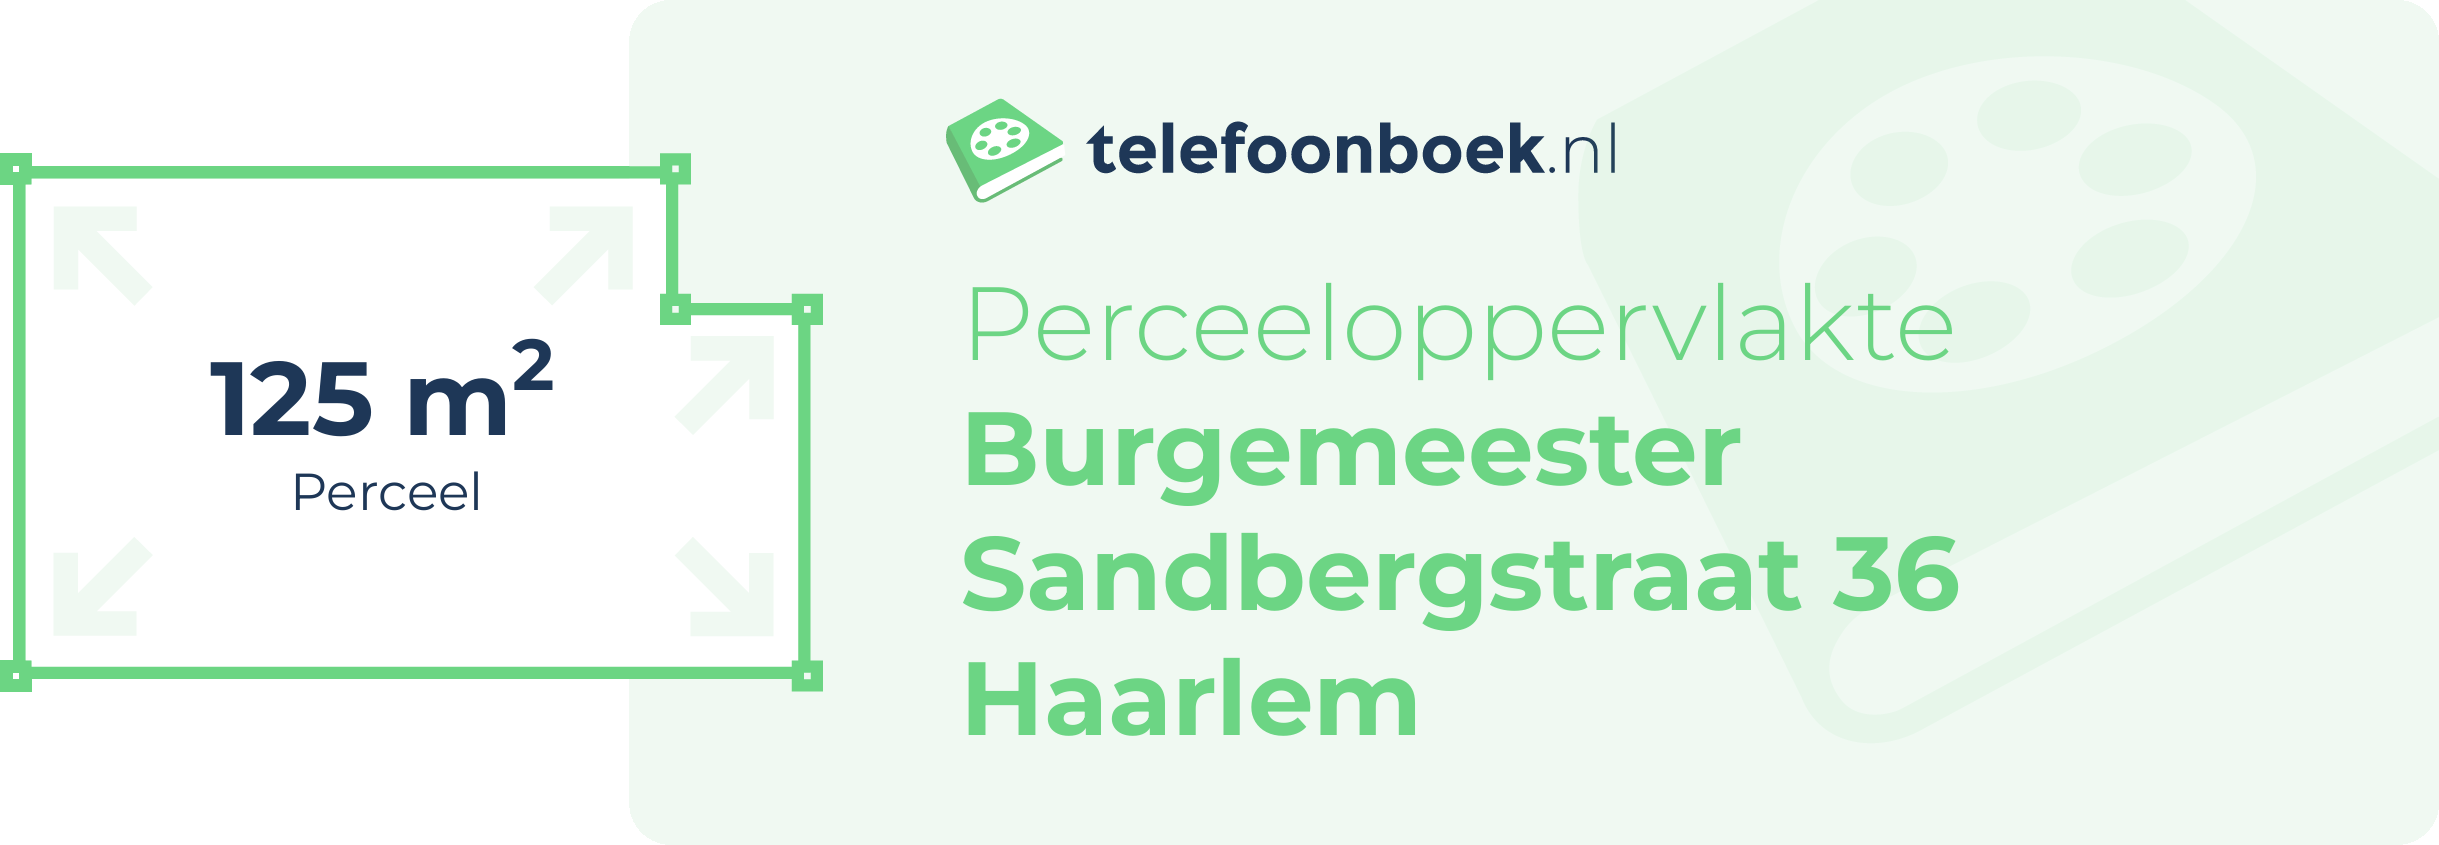 Perceeloppervlakte Burgemeester Sandbergstraat 36 Haarlem